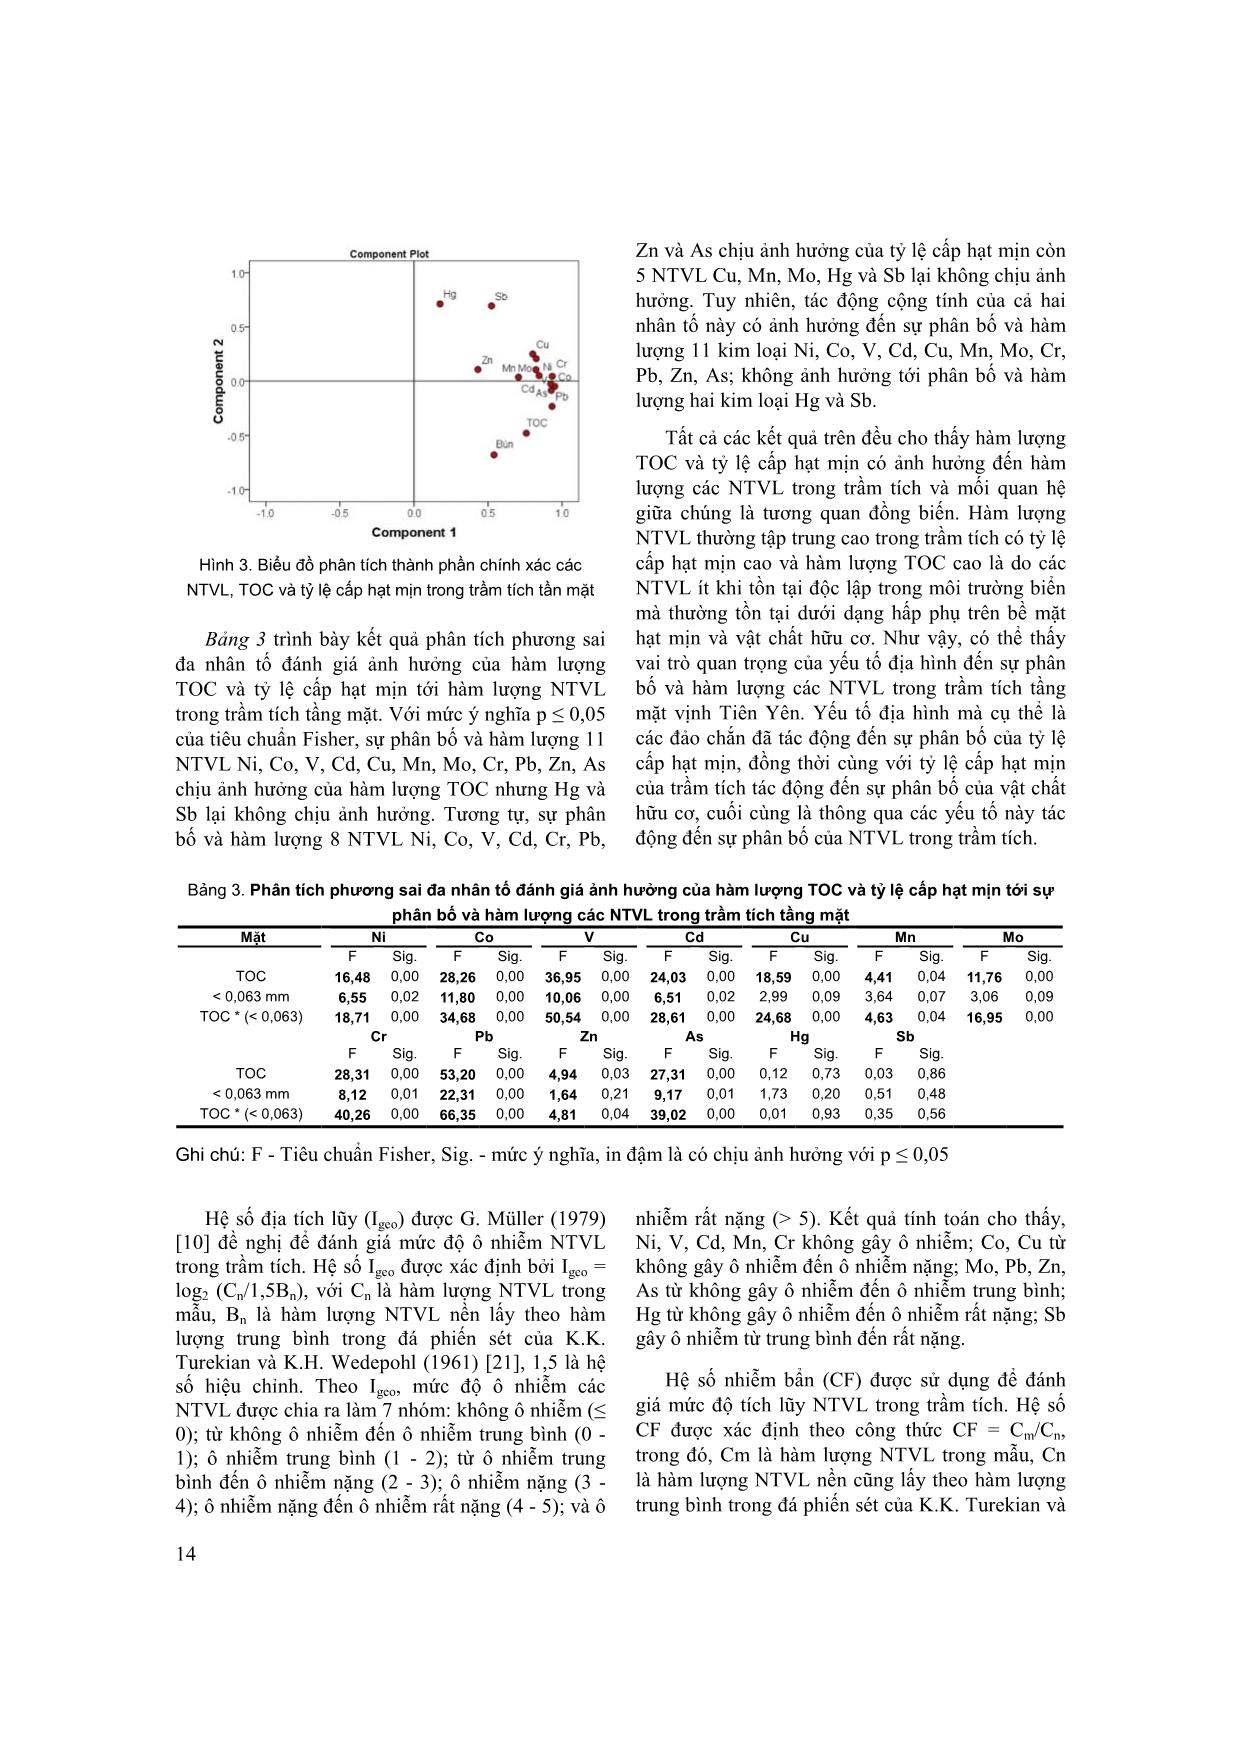 Đặc điểm phân bố các nguyên tố vi lượng trong trầm tích tầng mặt vịnh Tiên Yên trang 5